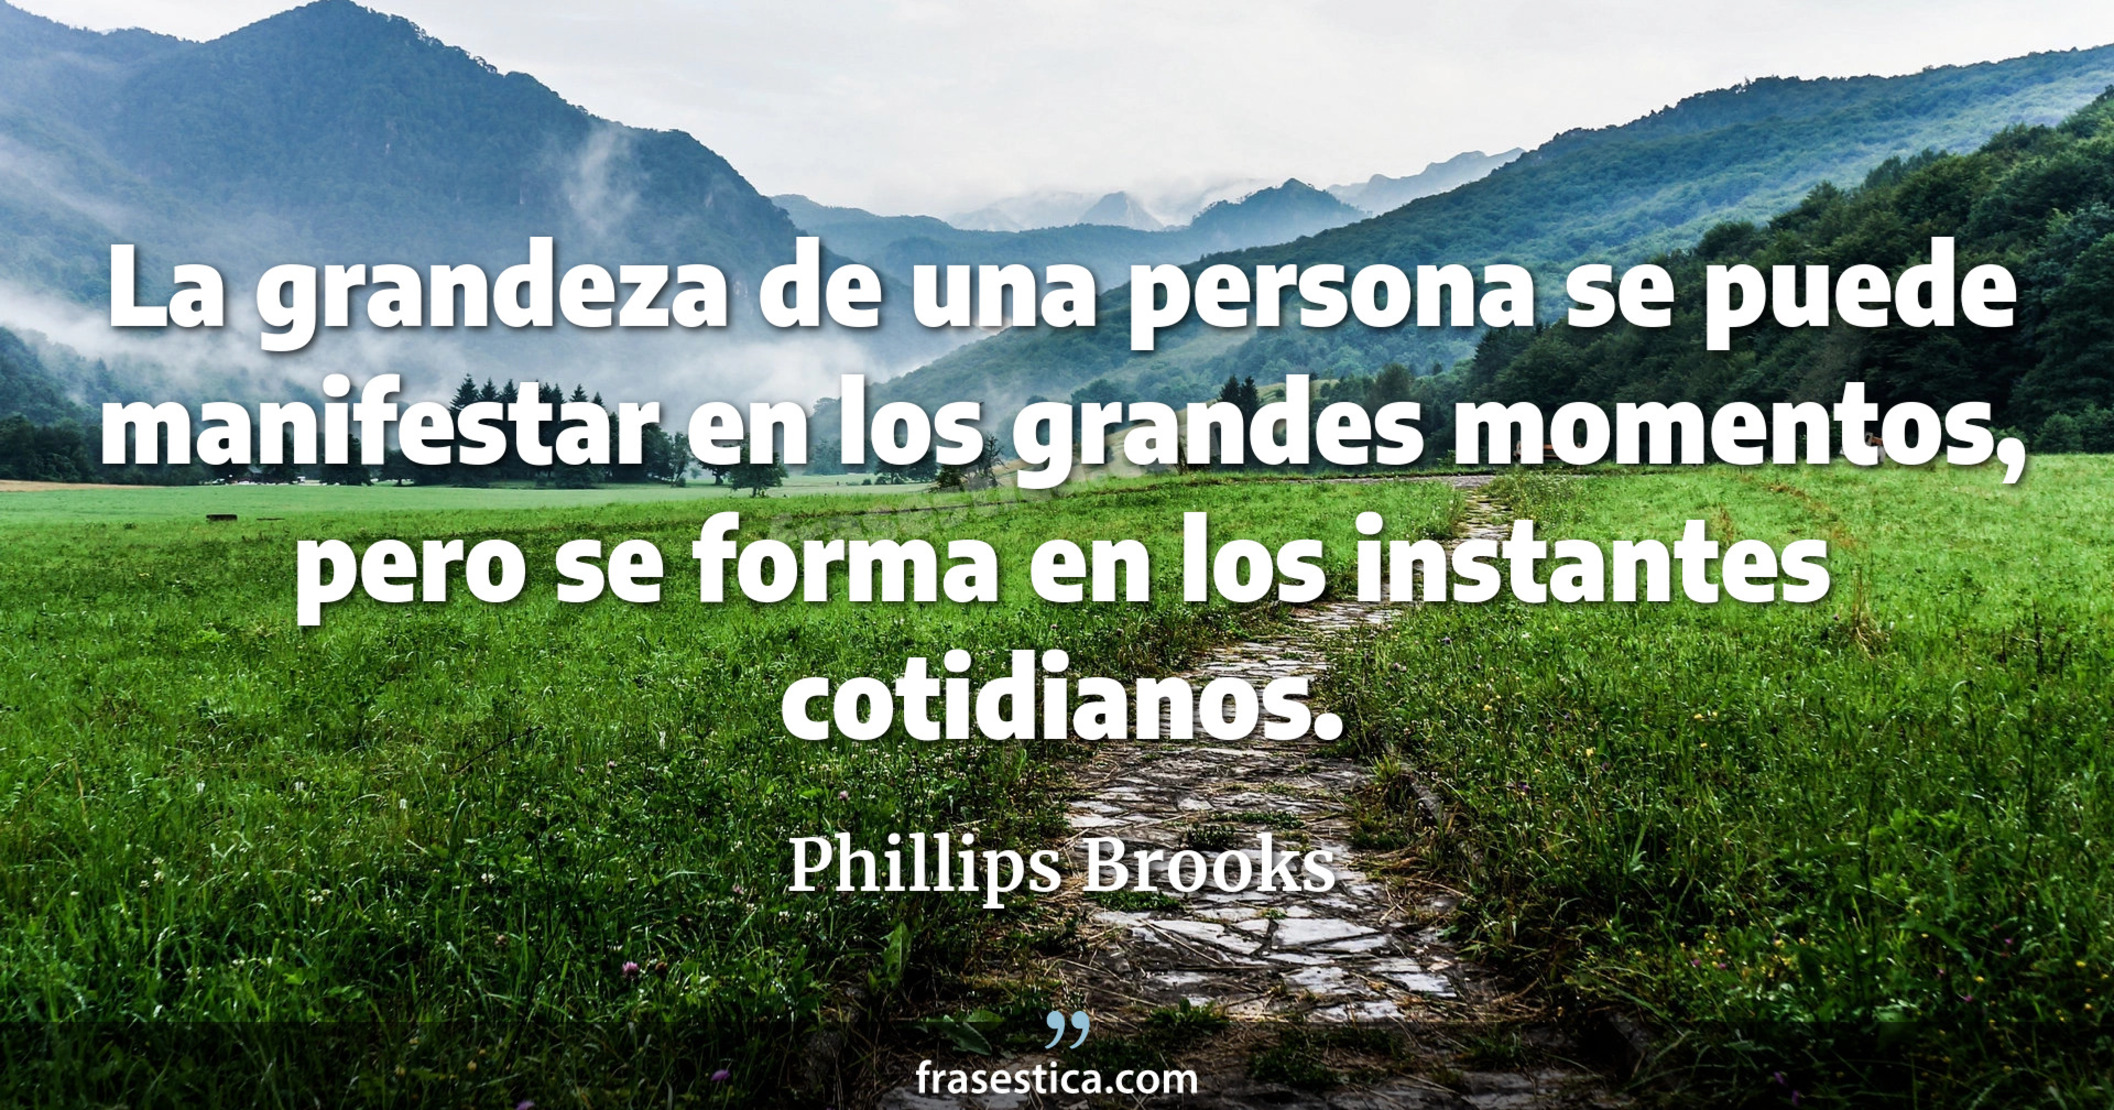 La grandeza de una persona se puede manifestar en los grandes momentos, pero se forma en los instantes cotidianos. - Phillips Brooks